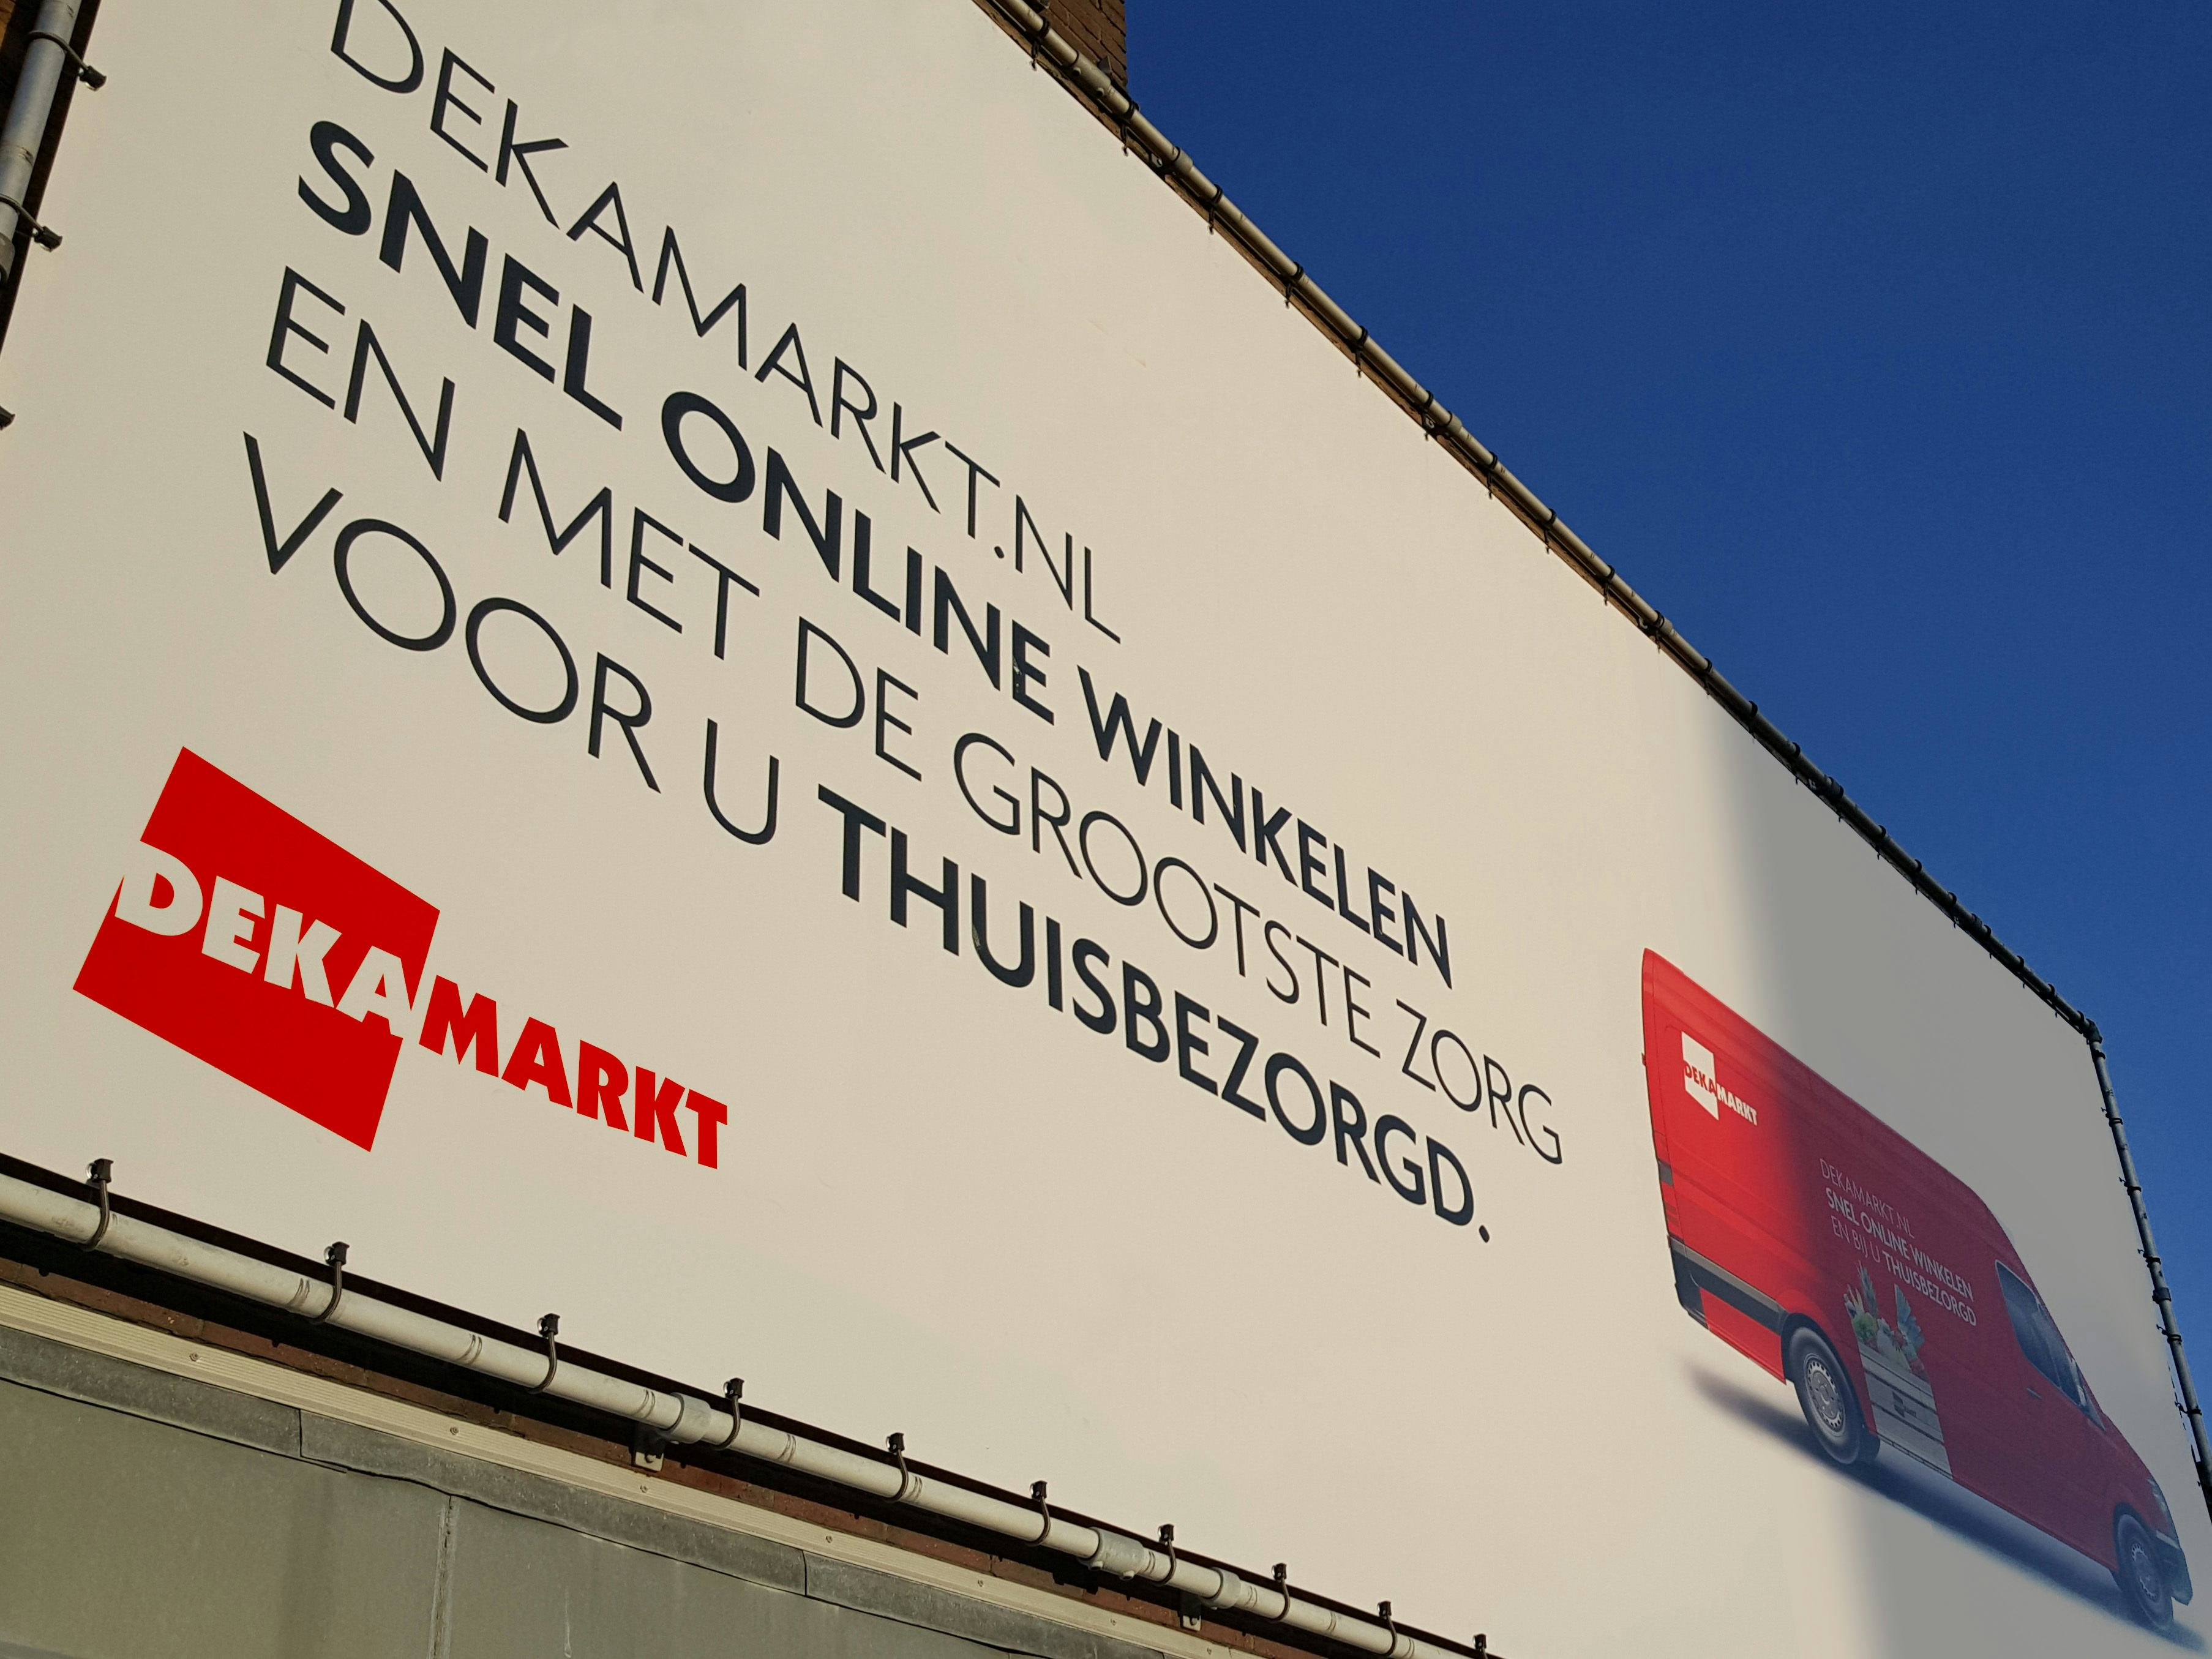 Dekamarkt gaat ook bezorgen in Zuid-Holland